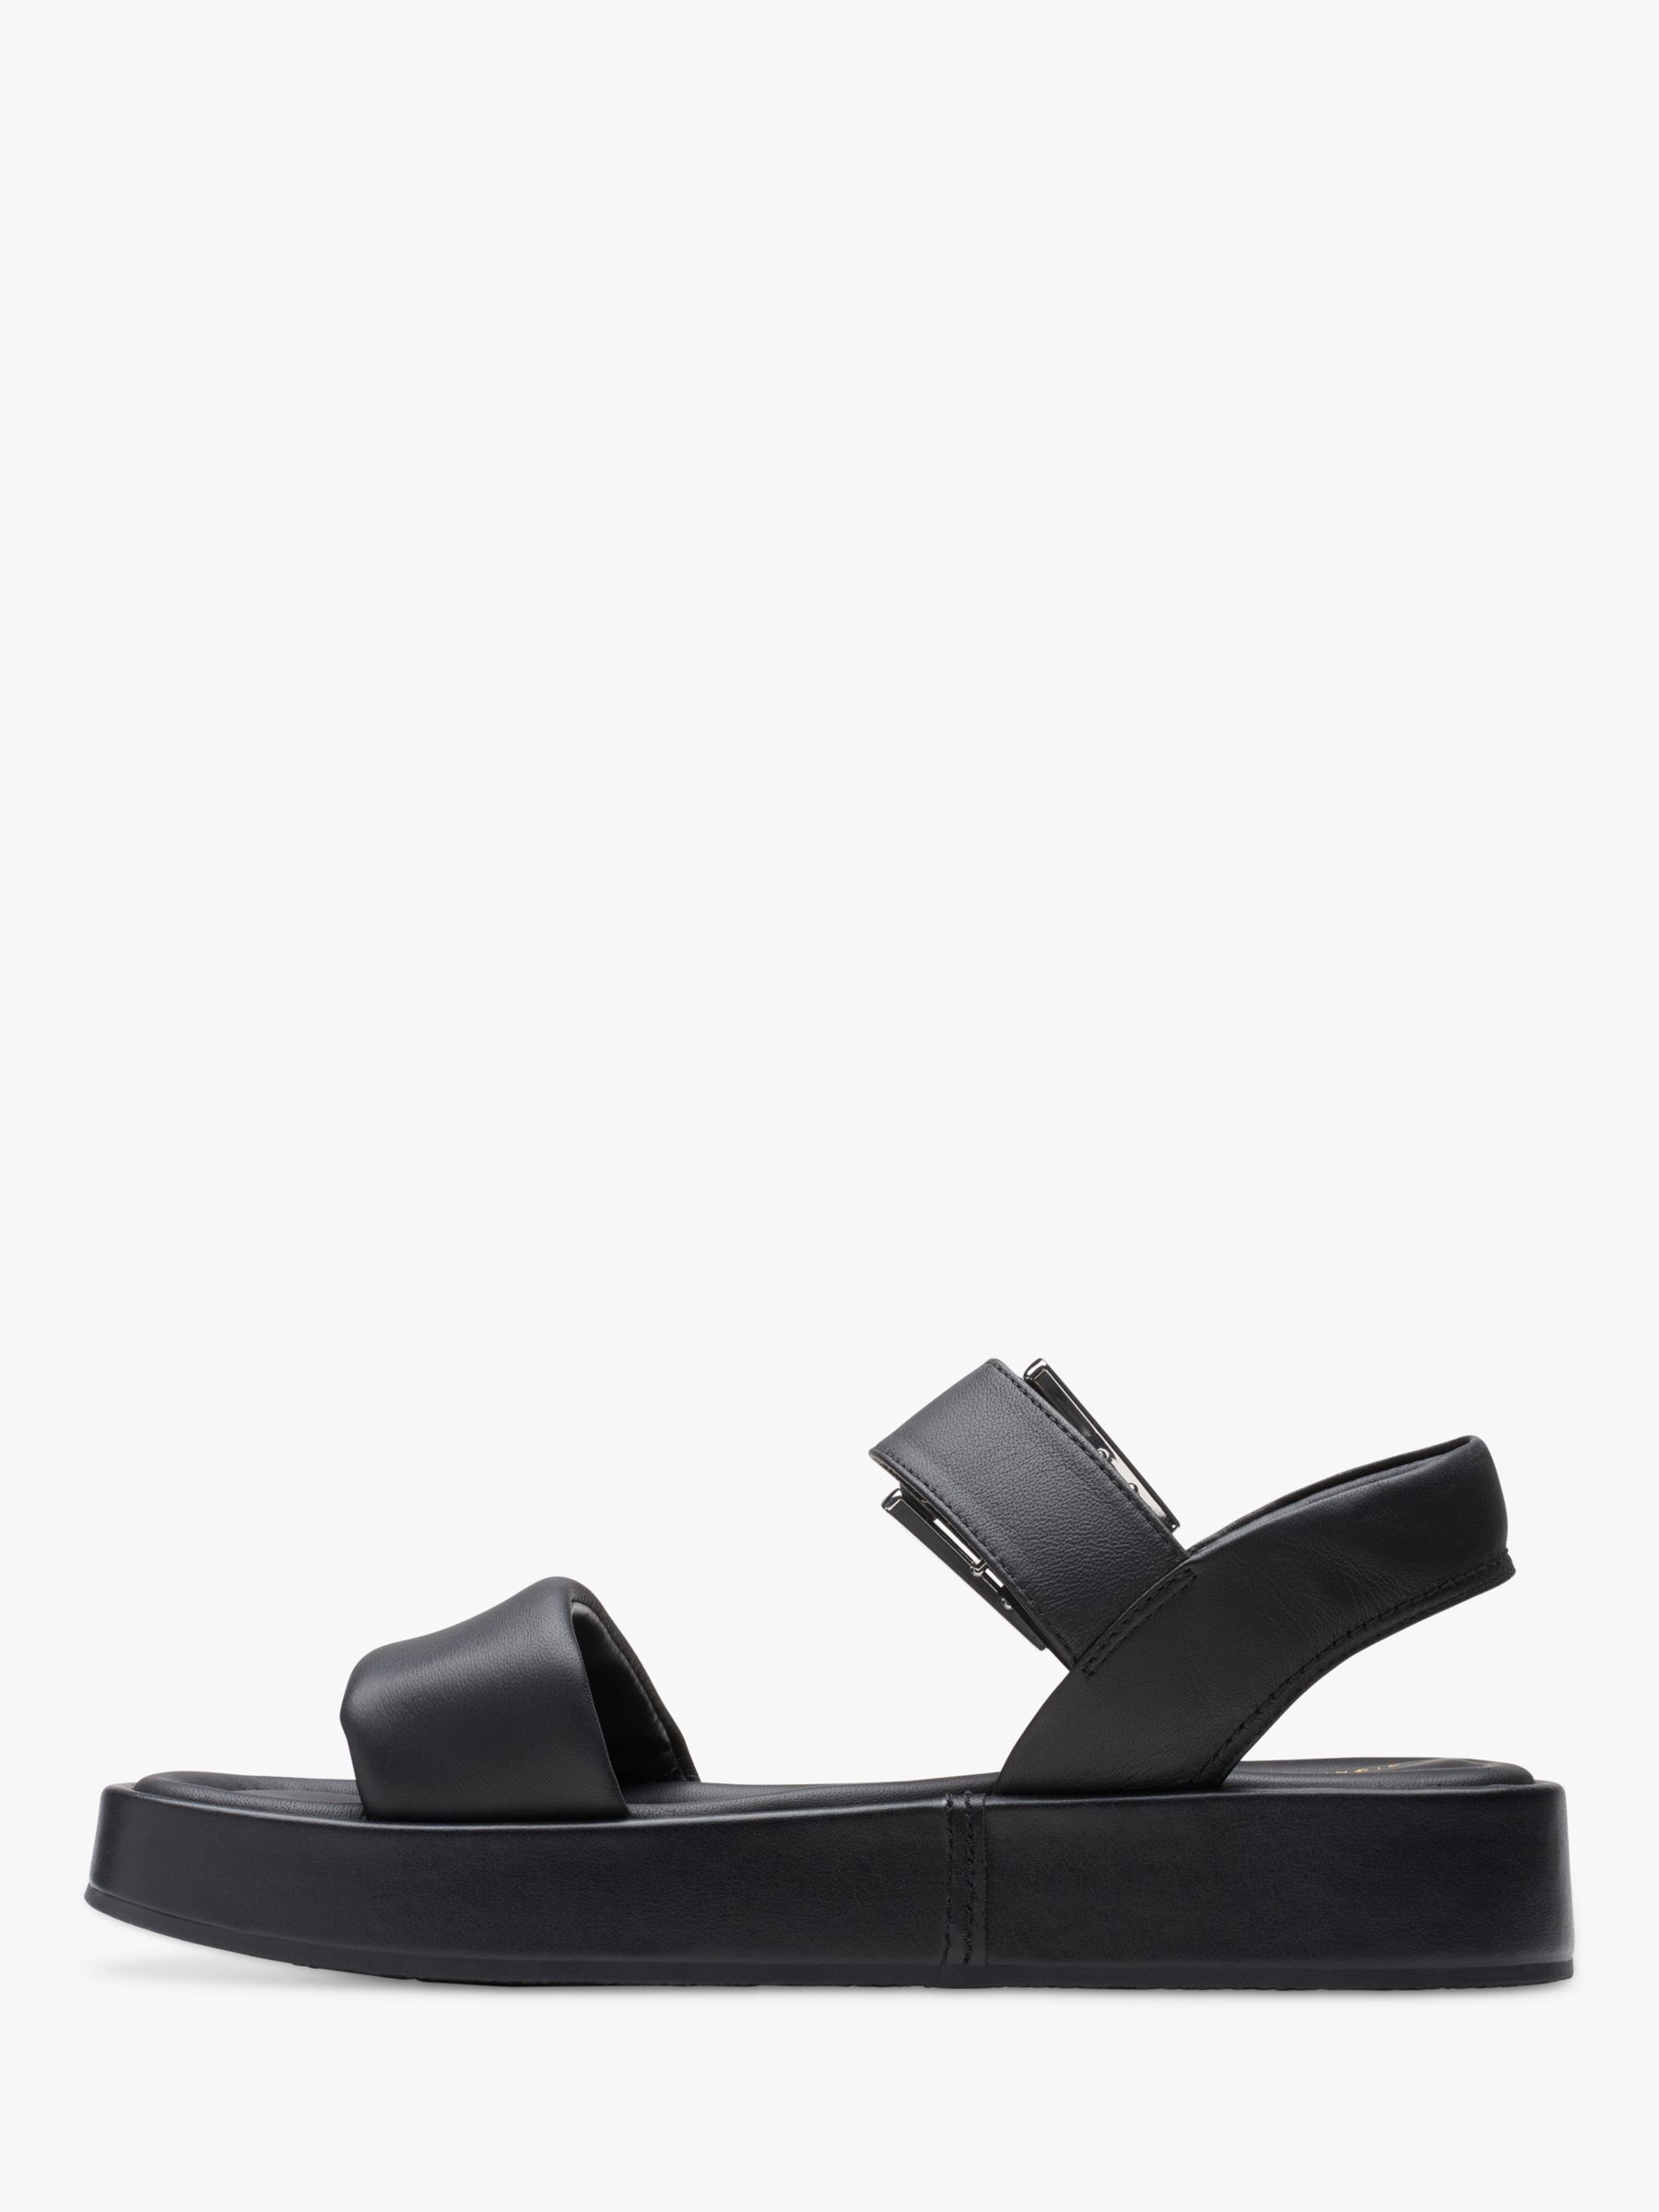 Clarks Alda Wide Fit Leather Strap Sandals, Black at John Lewis & Partners